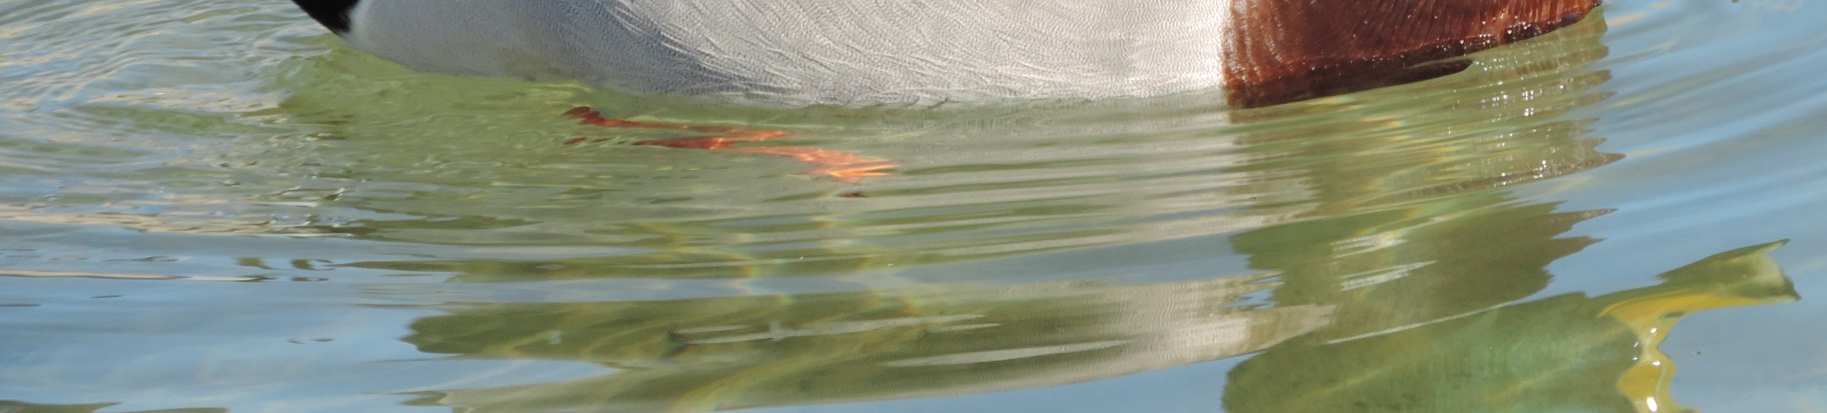 černá srpovitě stočená ocasní pera (